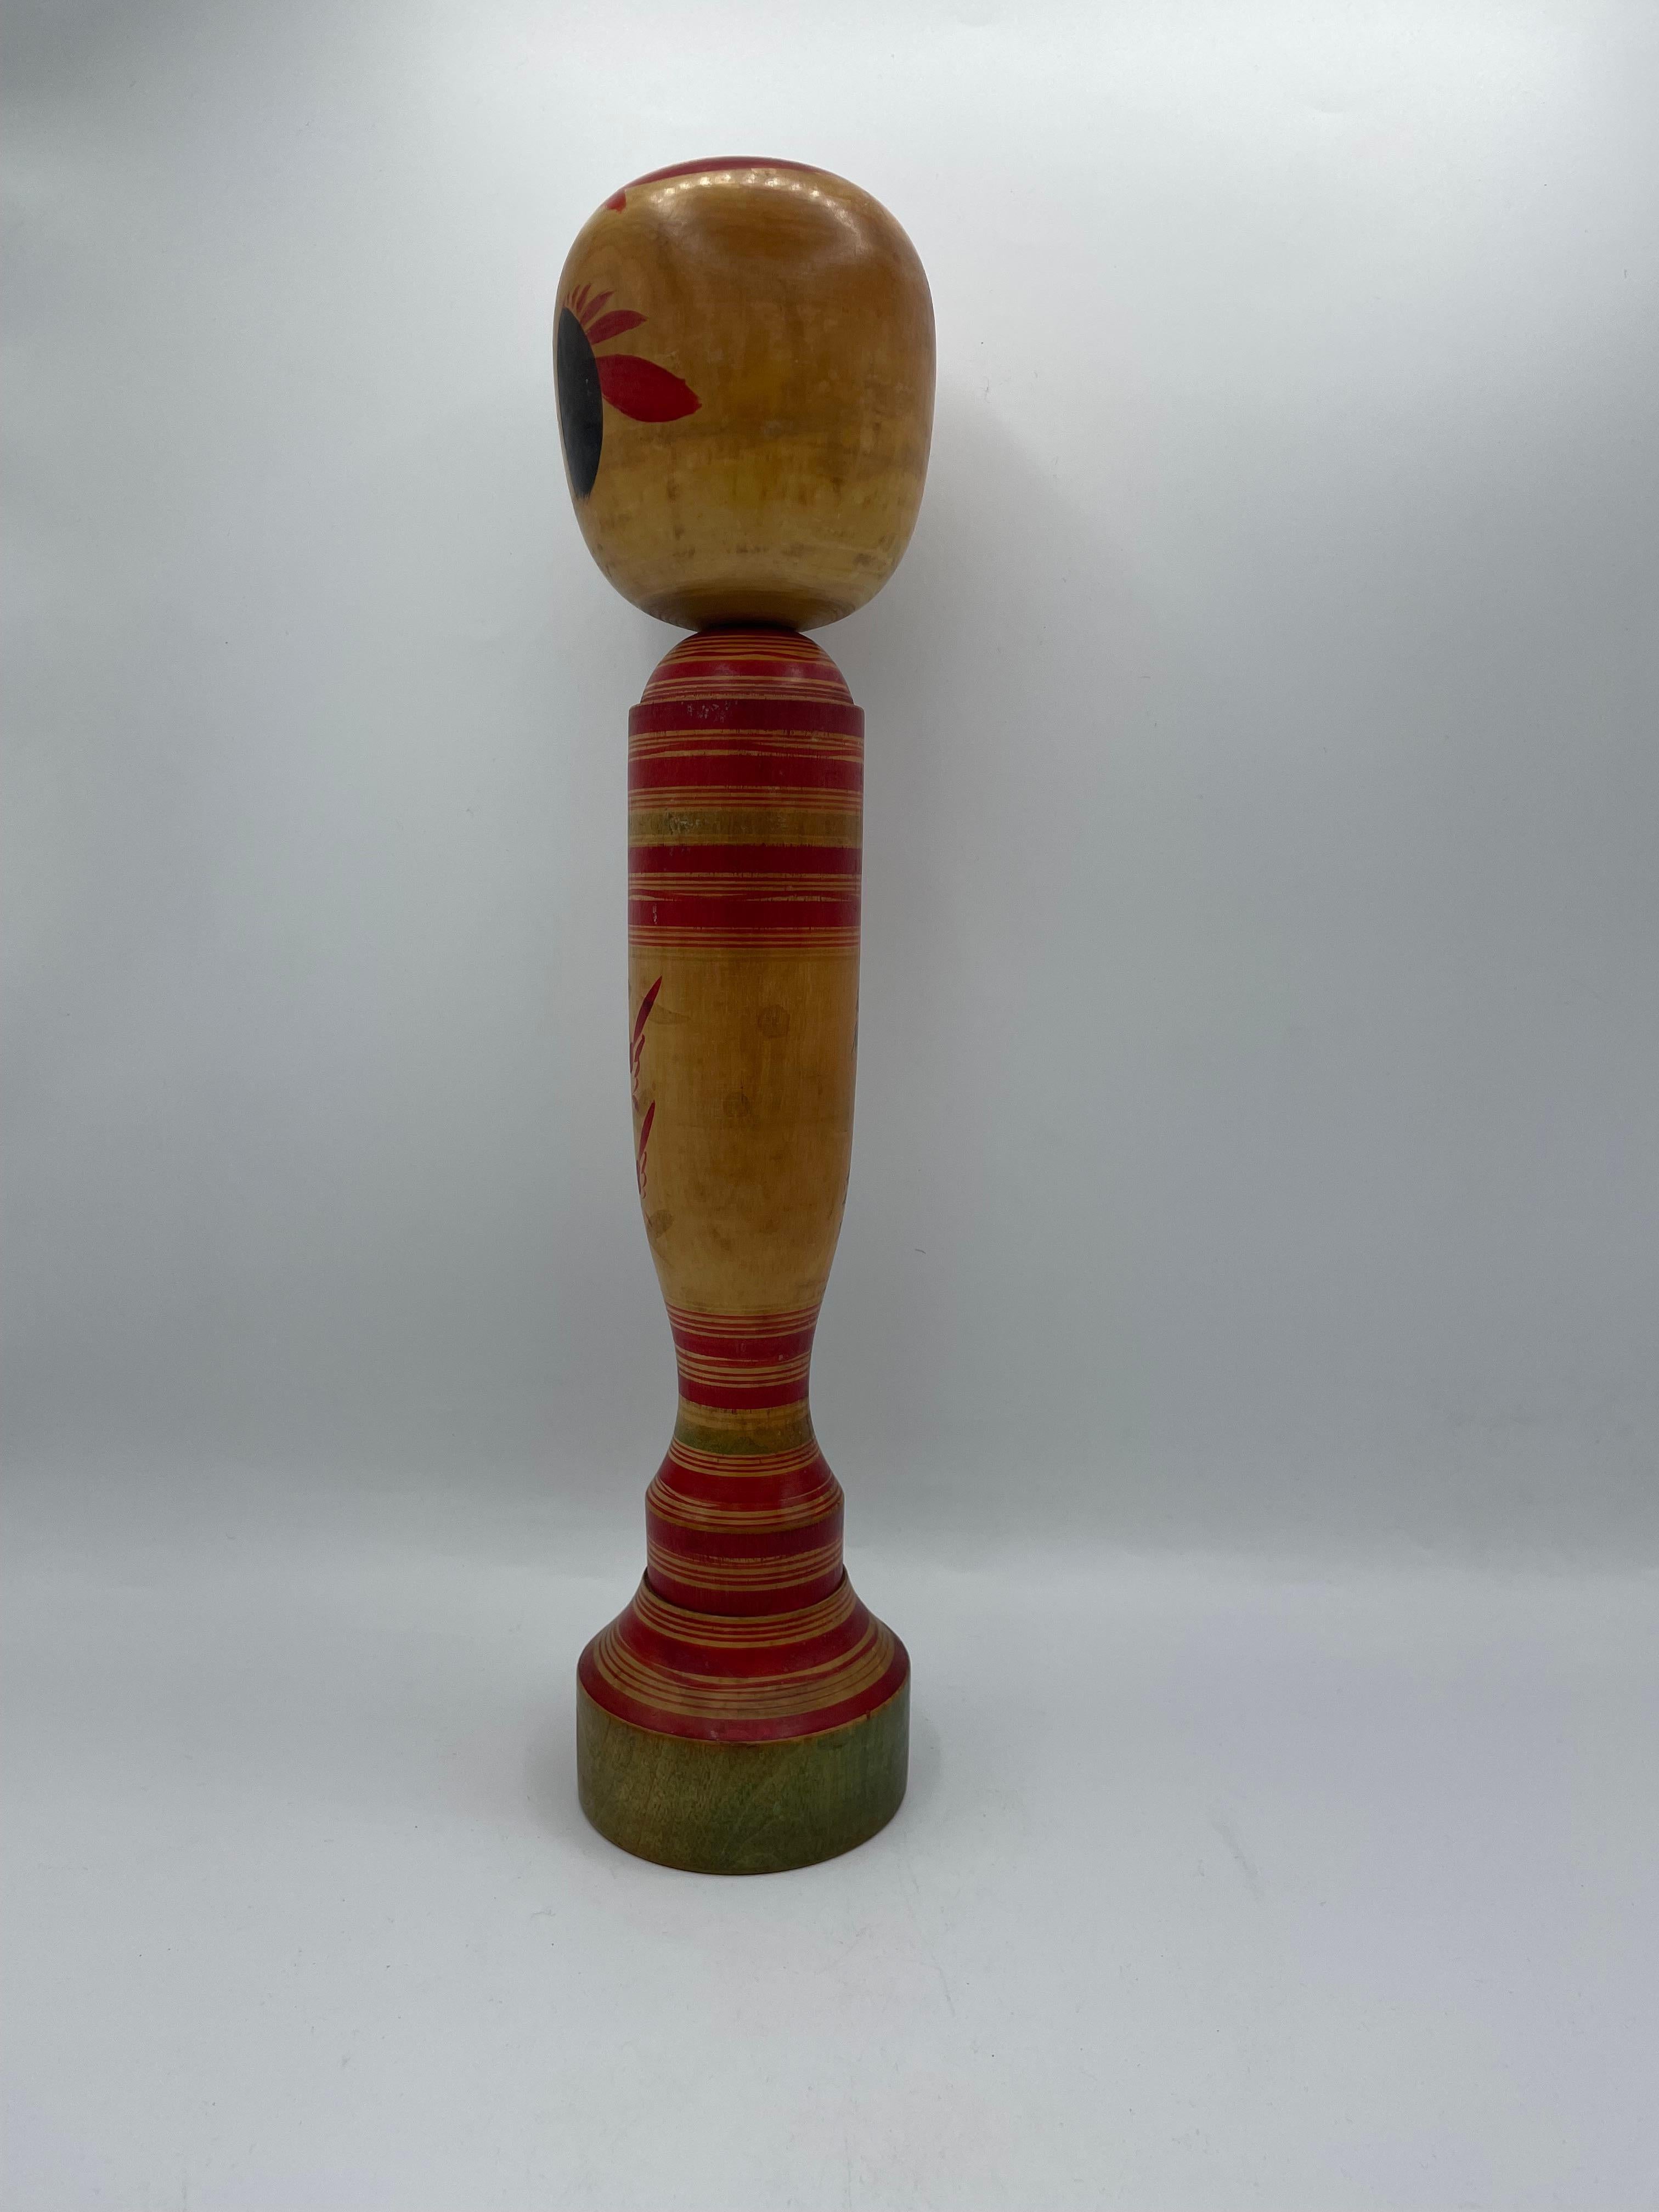 Dies ist eine Holzpuppe, die auf Japanisch Kokeshi genannt wird.
Dieses Kokeshi wurde in Japan in den 1960er Jahren vom Kokeshi-Künstler Kenjiro HIRAGA hergestellt.
Er wurde am 17. November 1918 geboren. Seine Unterschrift befindet sich auf der